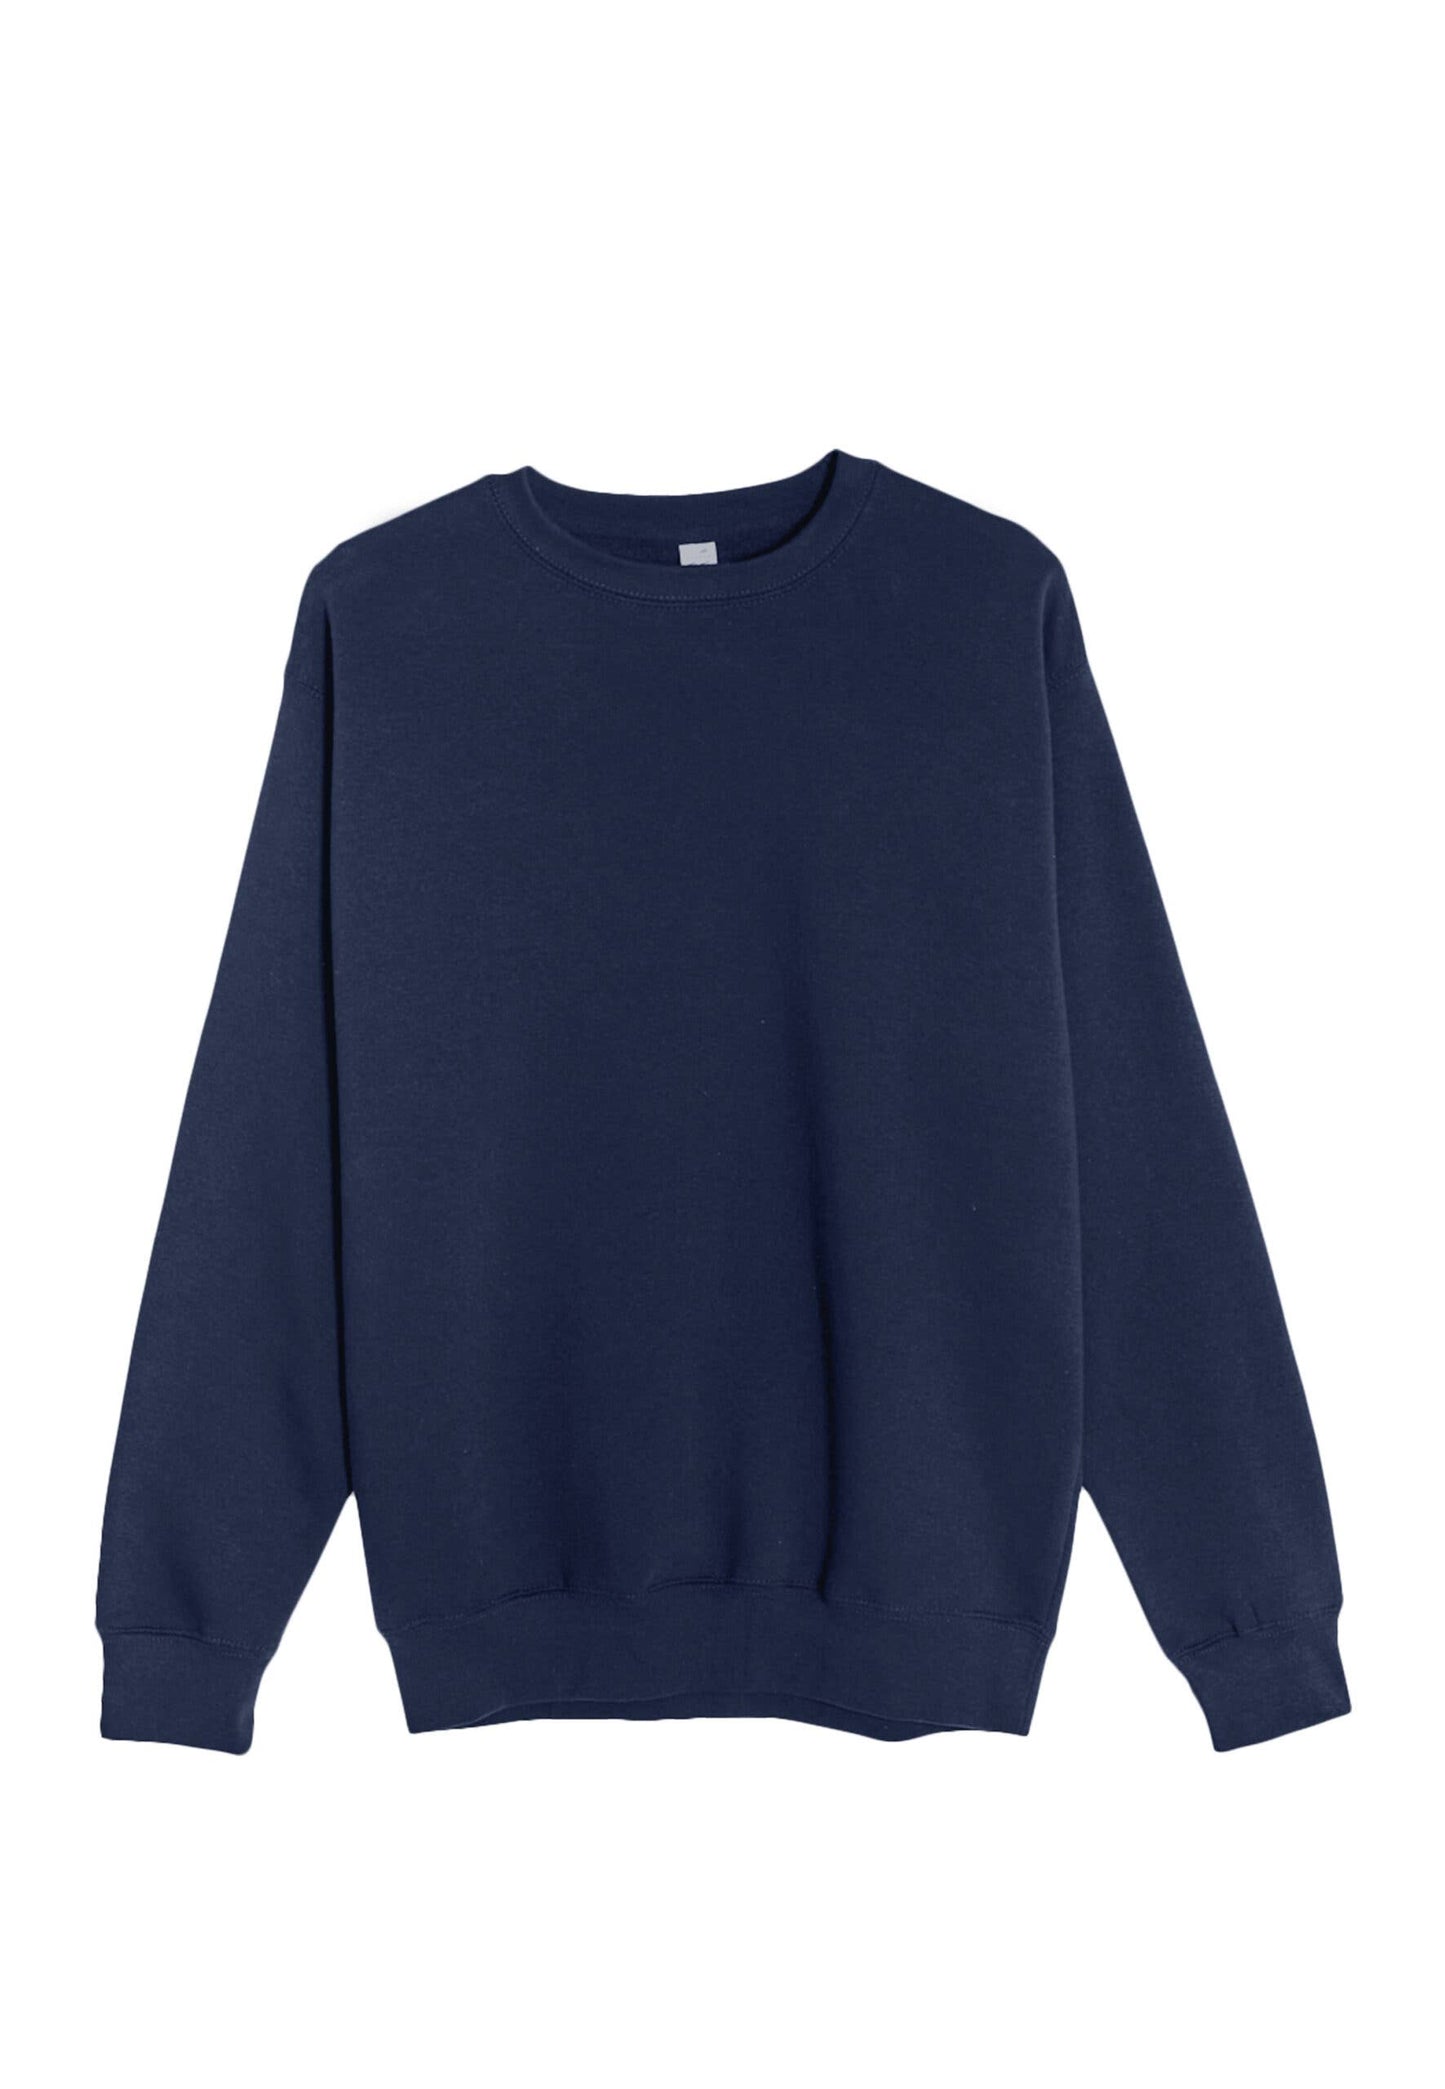 Premium Crewneck Sweatshirt - For Men & Women: S / Charcoal Heather